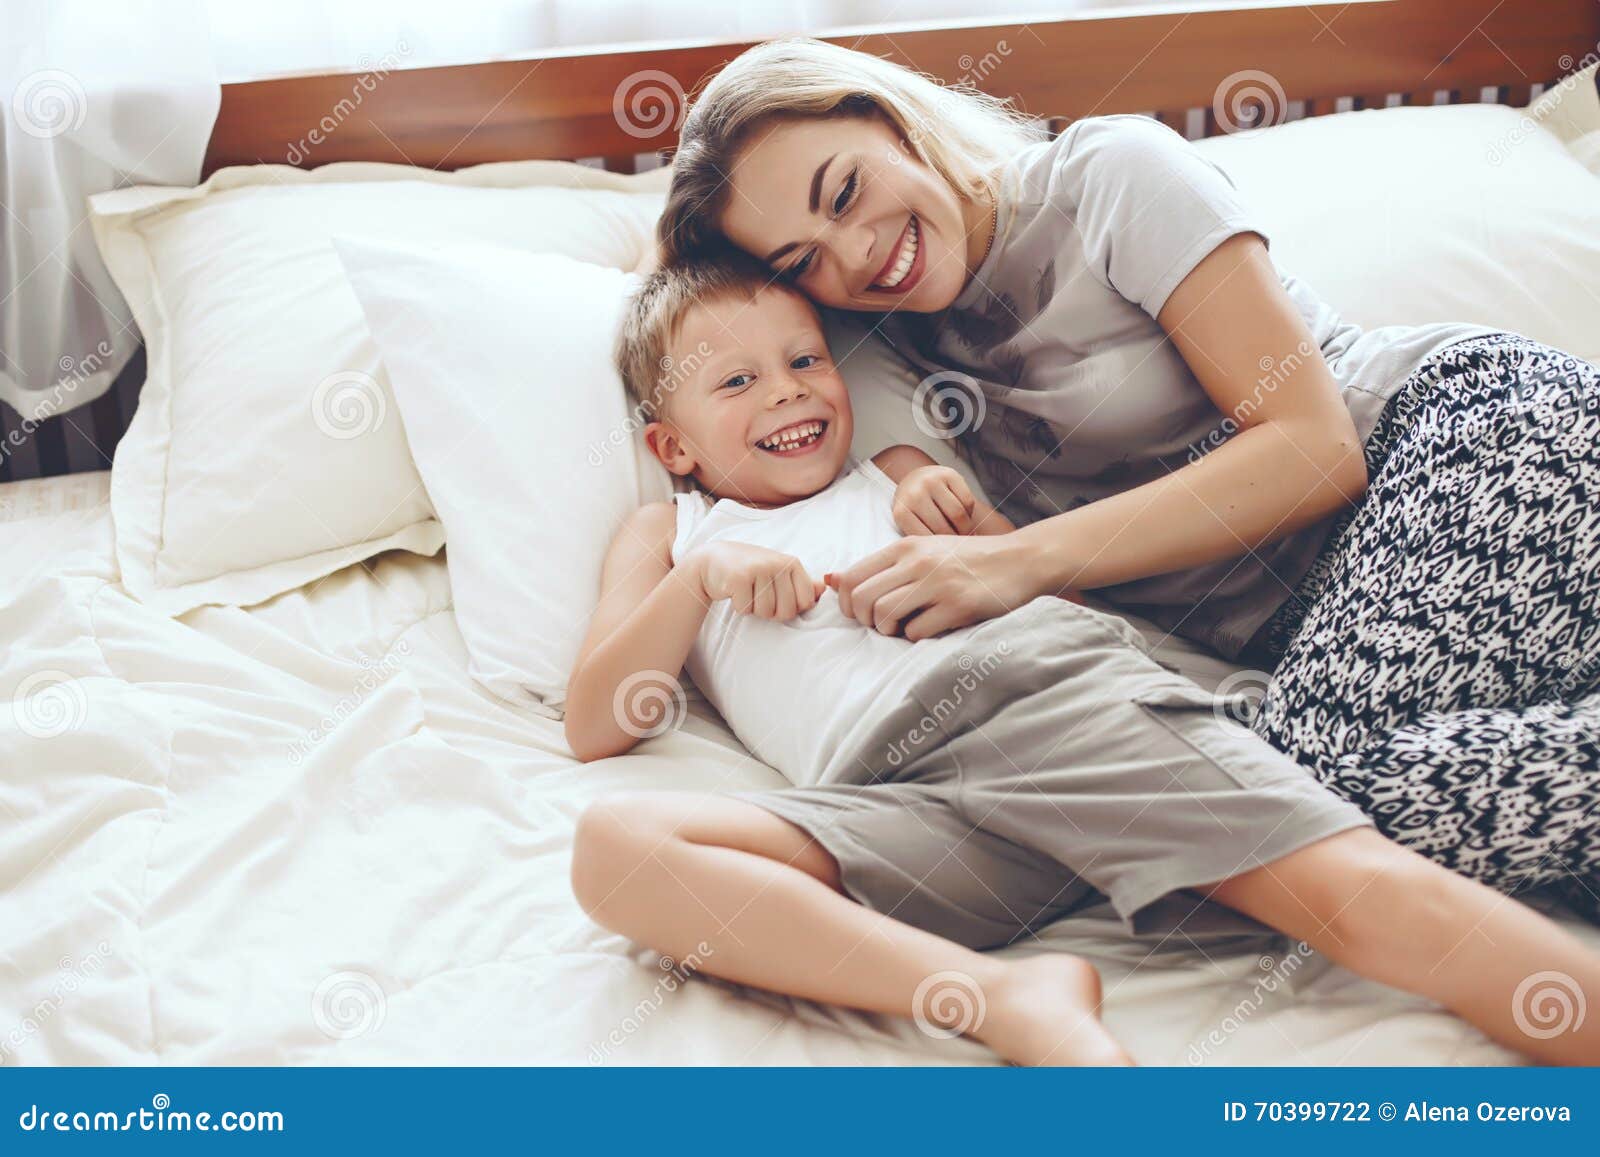 Мама в постели сына видео. Мама у кровати ребенка. Фотосессия мама с сыном в постели. Фотосессия на кровати с ребенком и мамой. Кровать для сына.